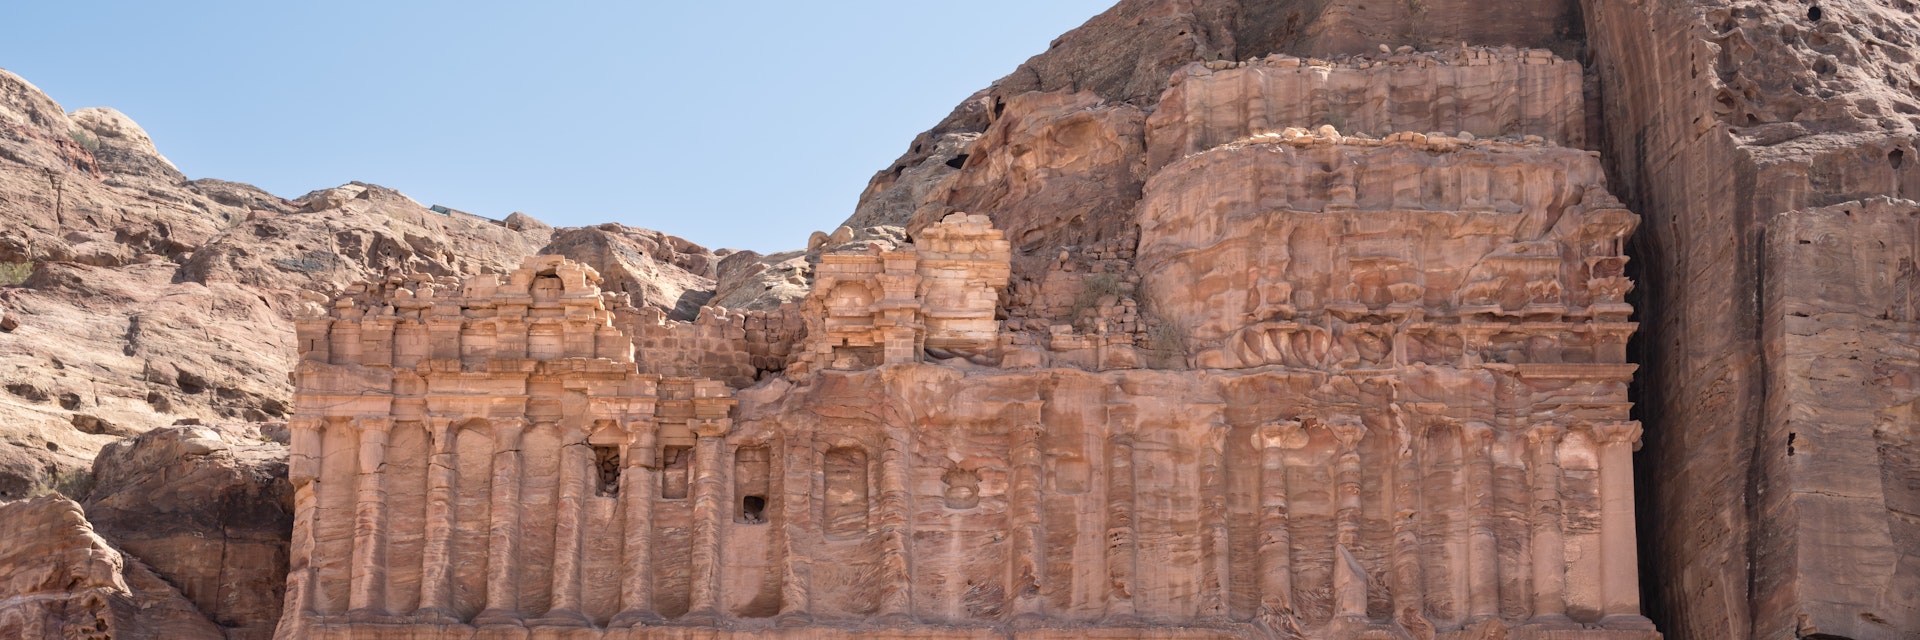 Palace Tomb facade in Petra, Jordan.